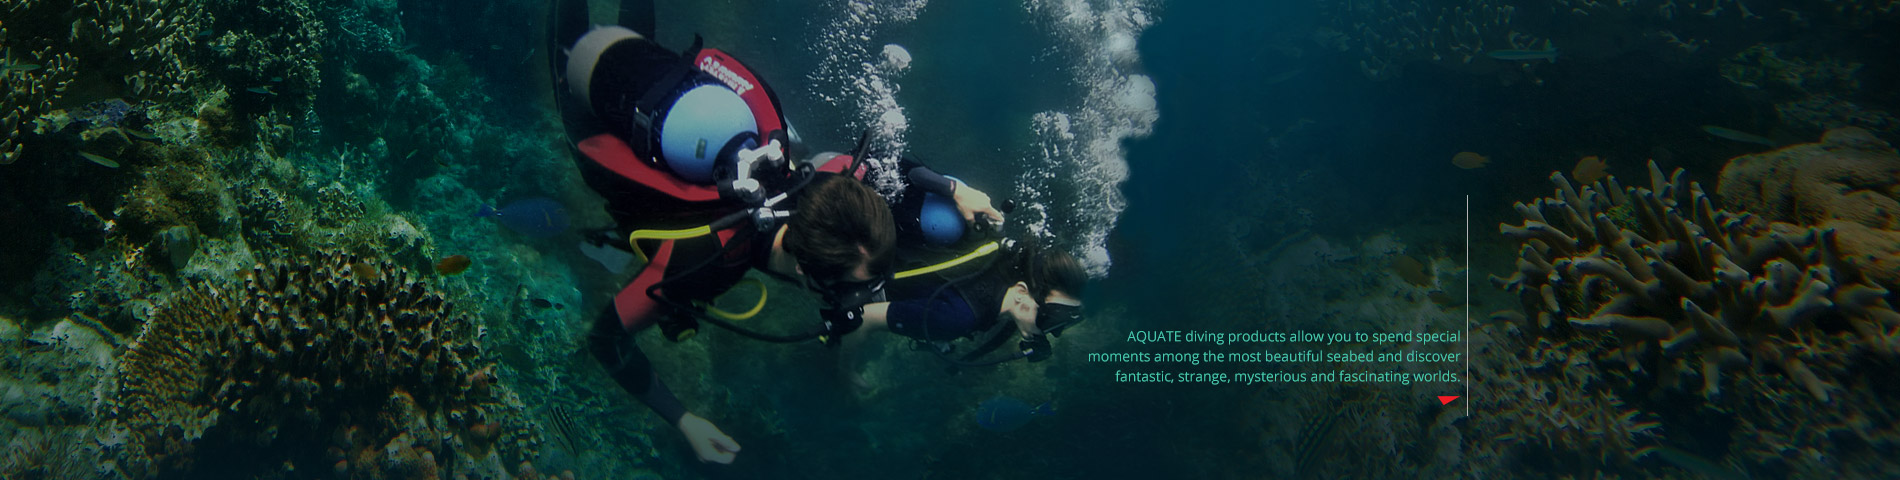 AQUATEC Sản phẩm sáng tạo cho môn thể thao lặn